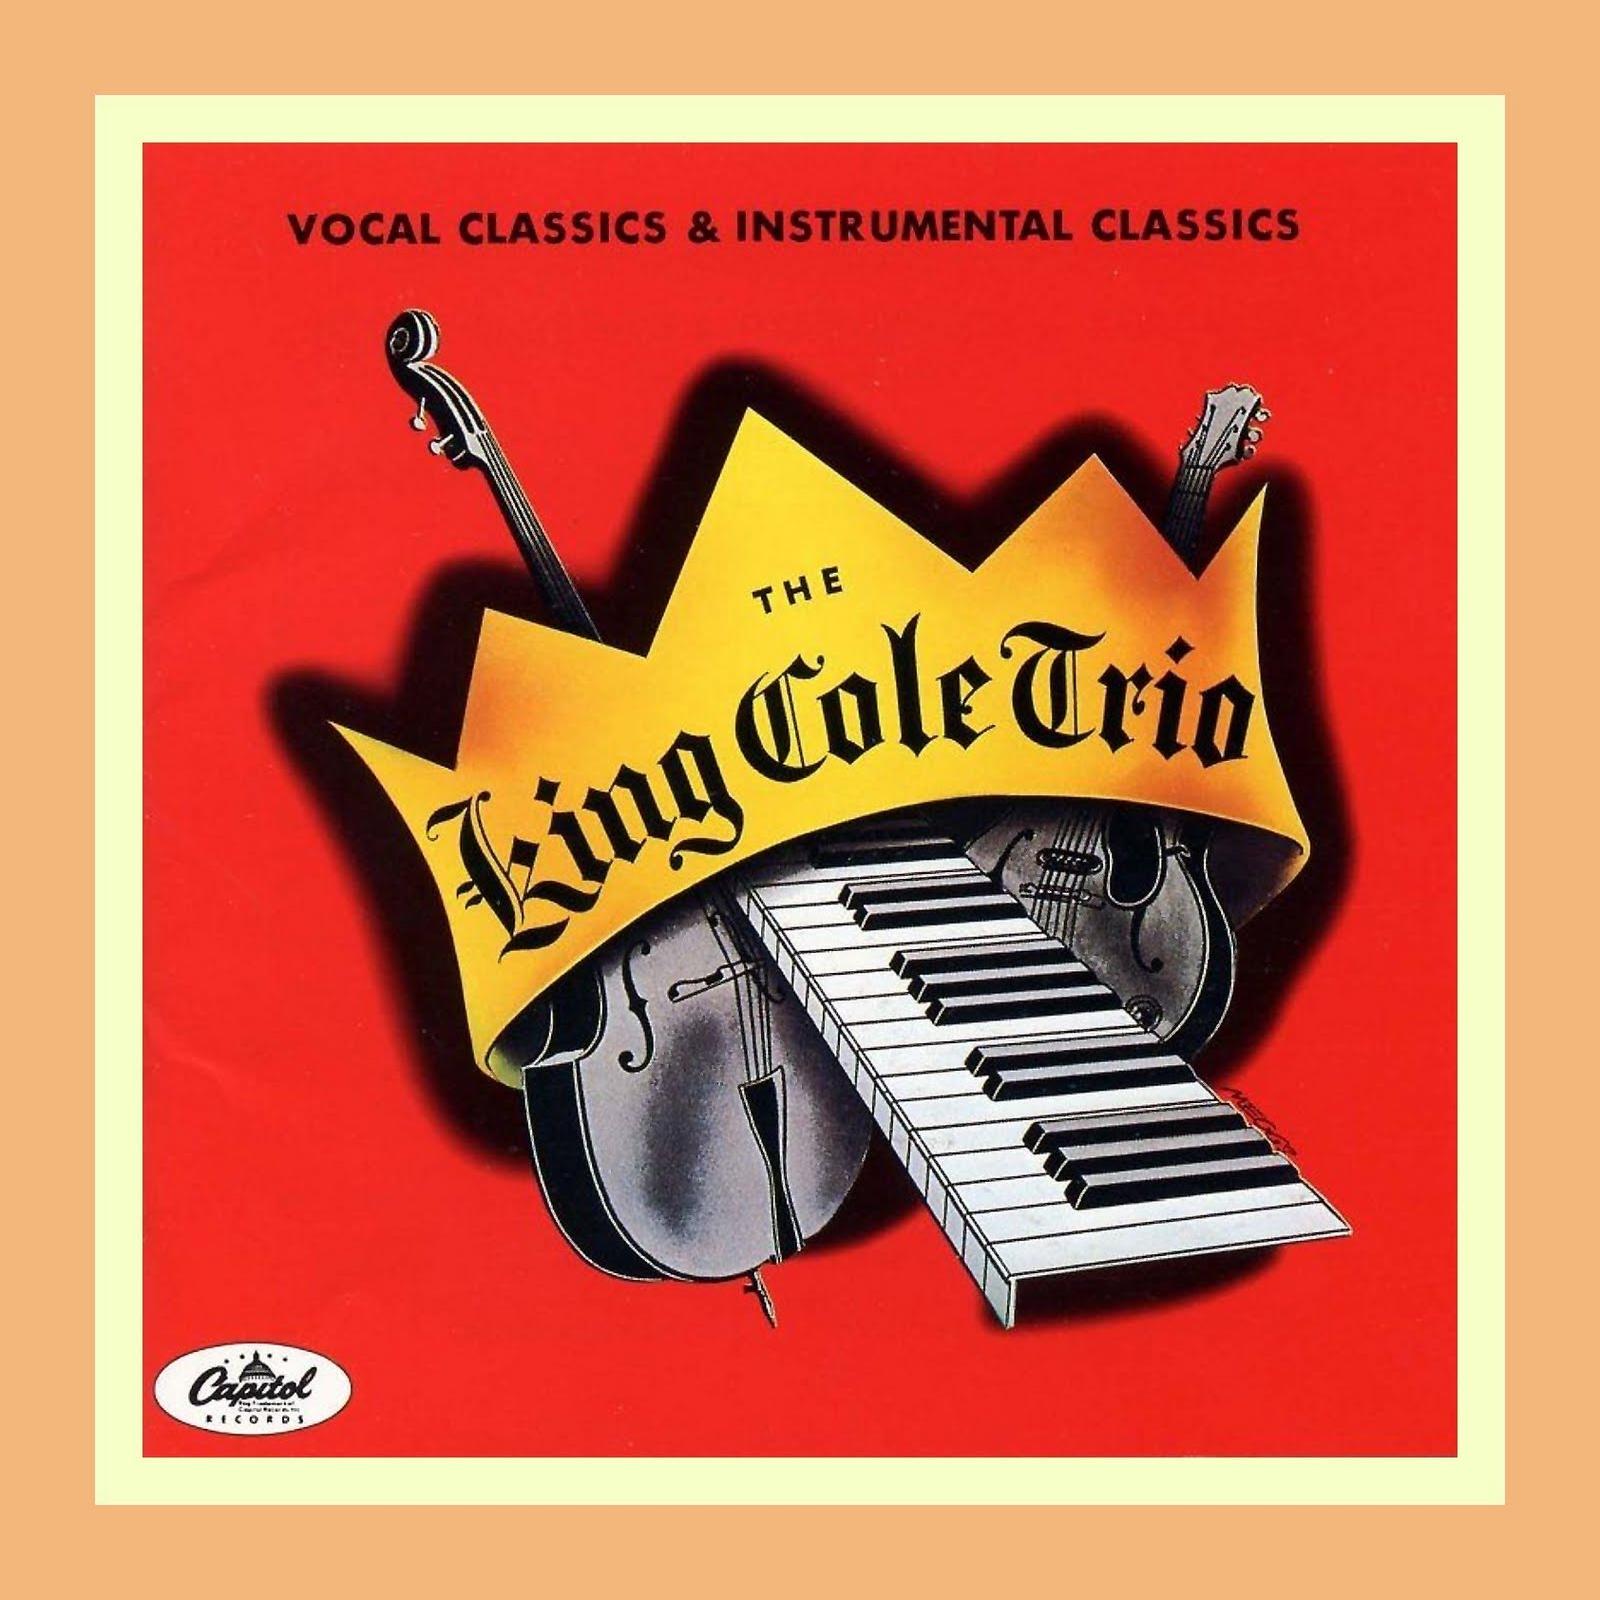 King Cole Trio - The King Cole Trio (1944)